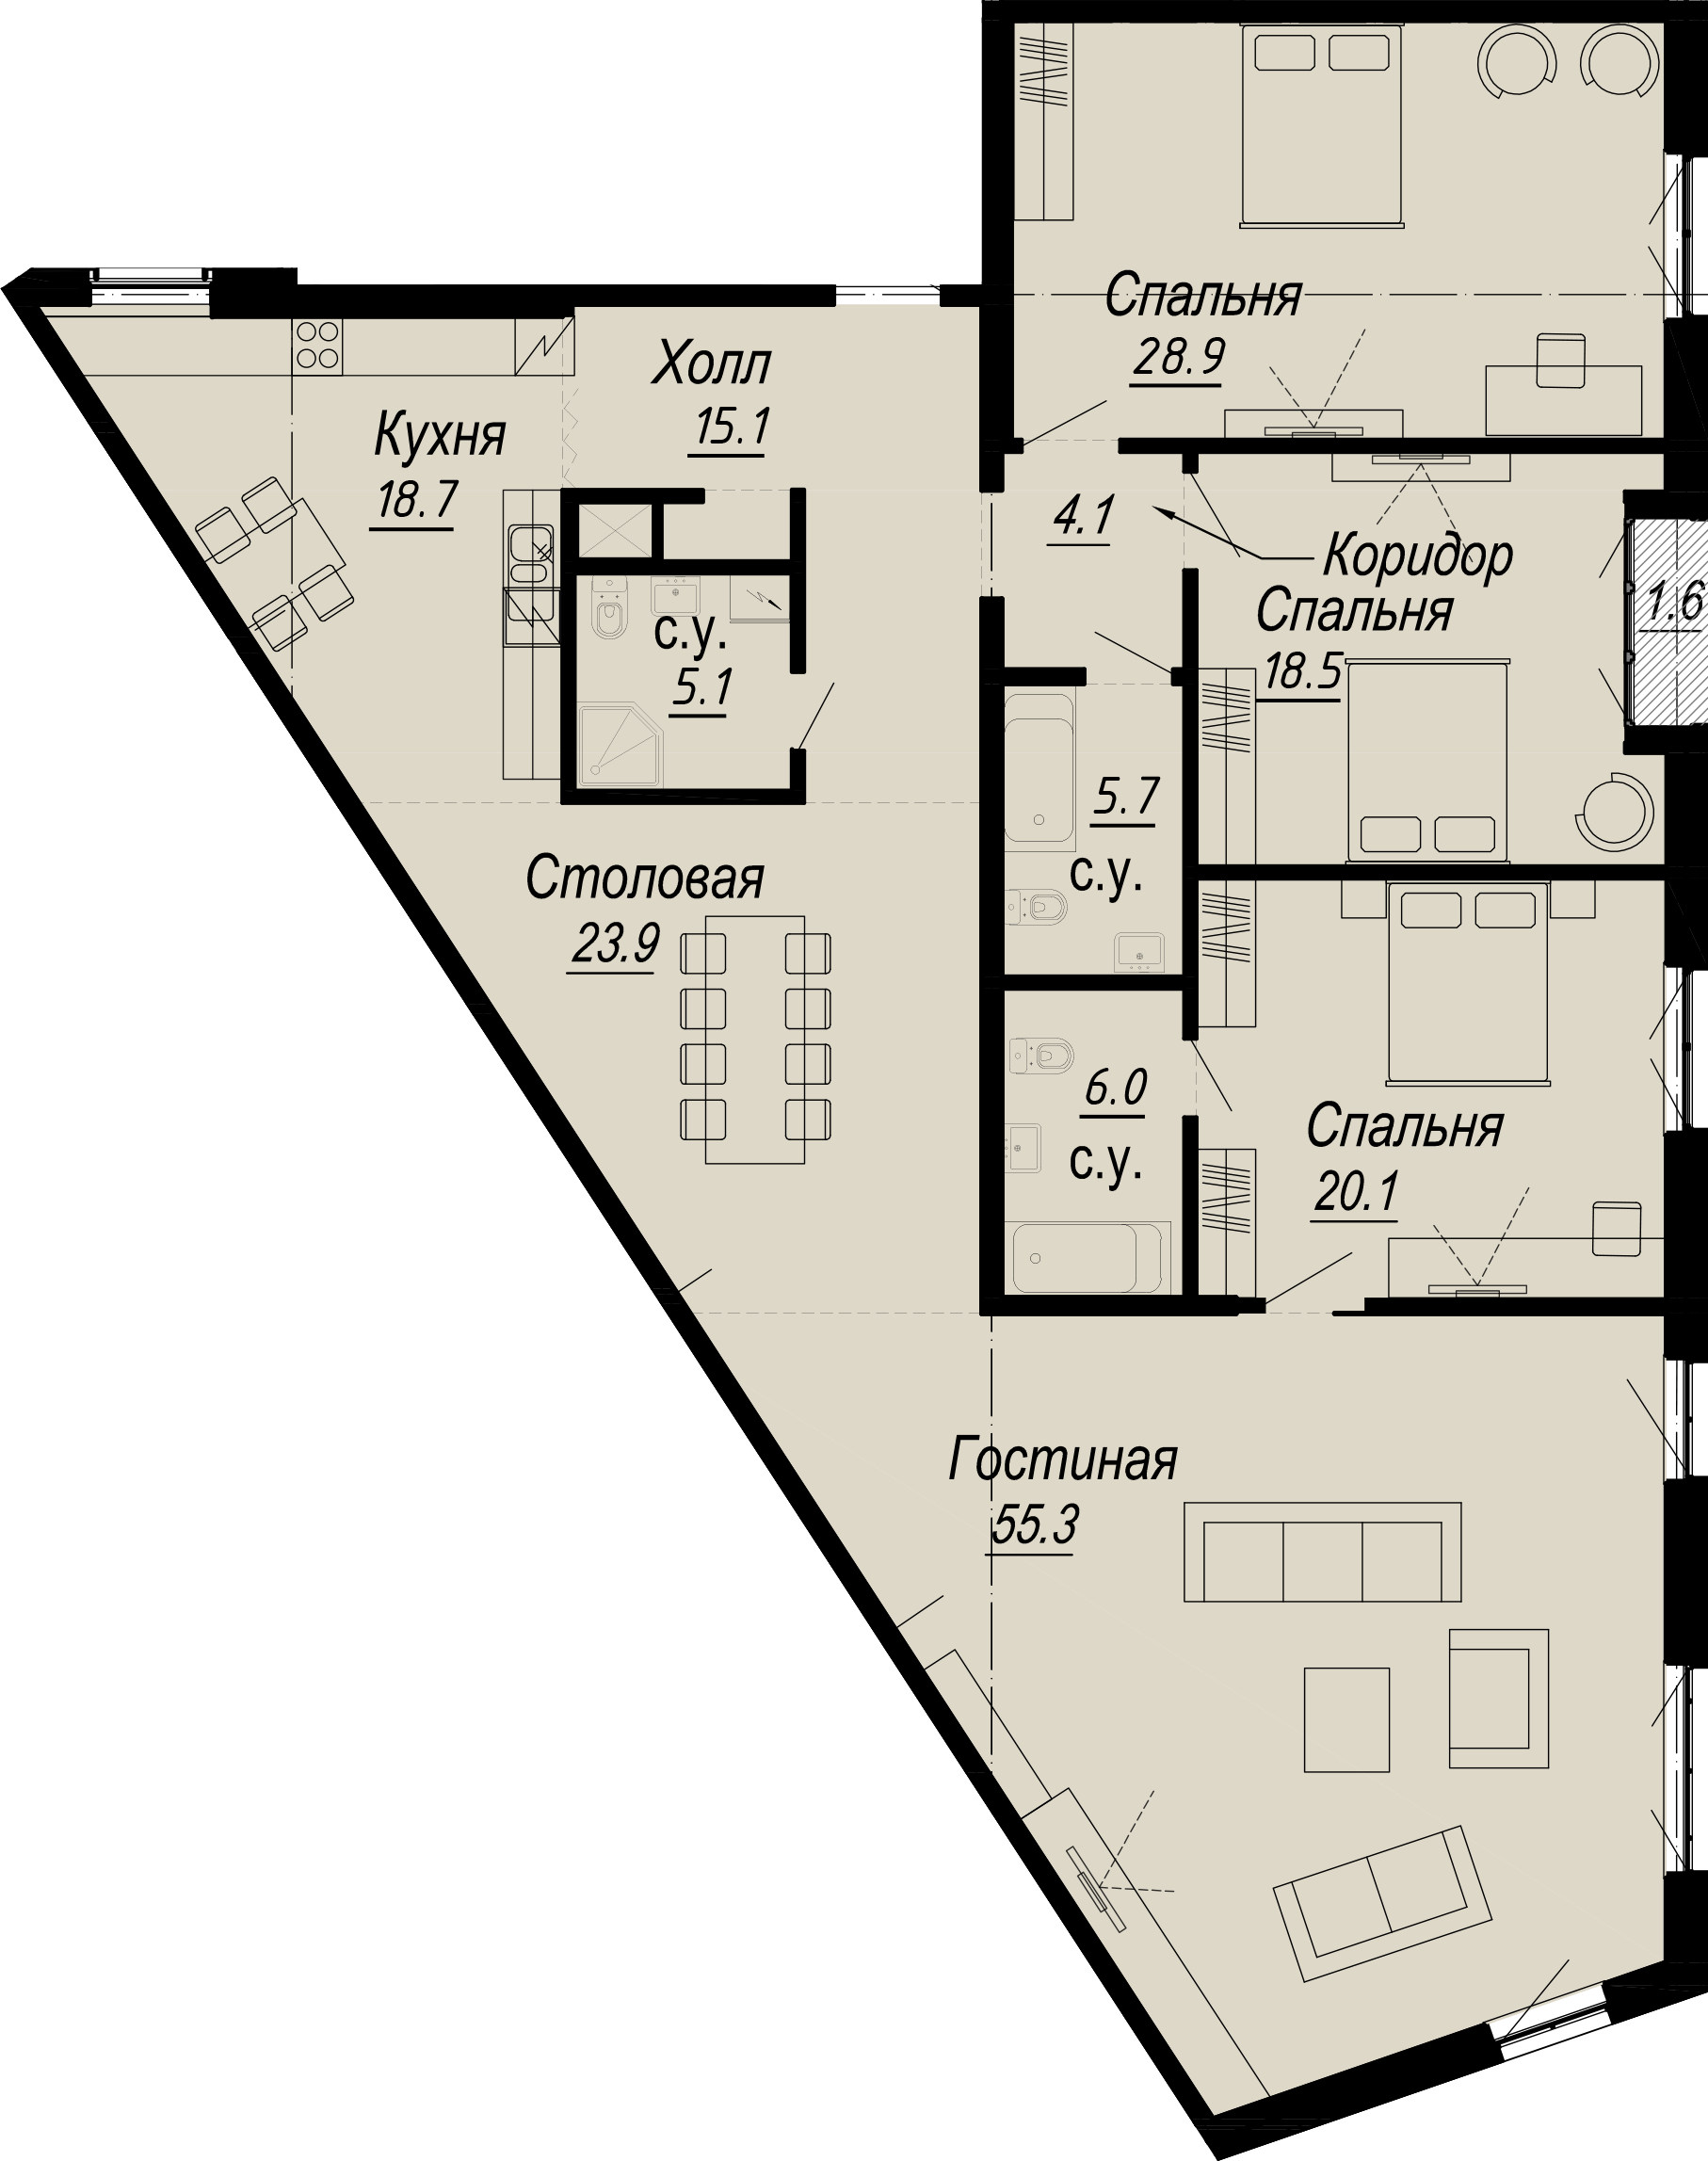 4-комнатная квартира  №8-5 в Meltzer Hall: 205.89 м², этаж 5 - купить в Санкт-Петербурге